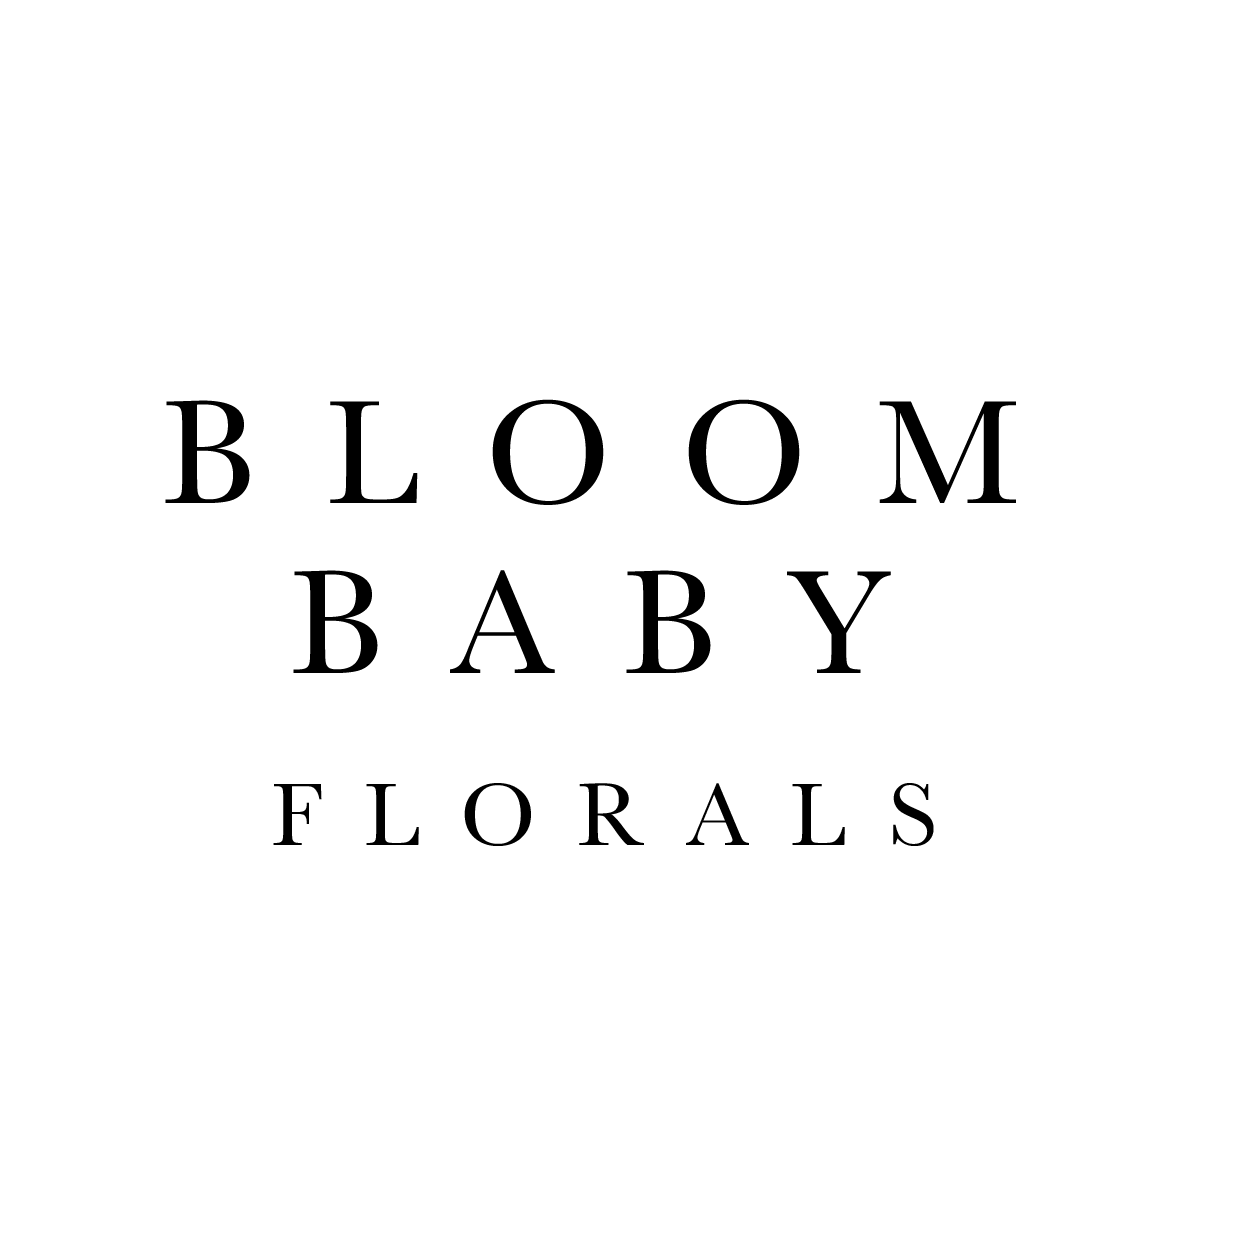 BLOOM BABY FLORALS